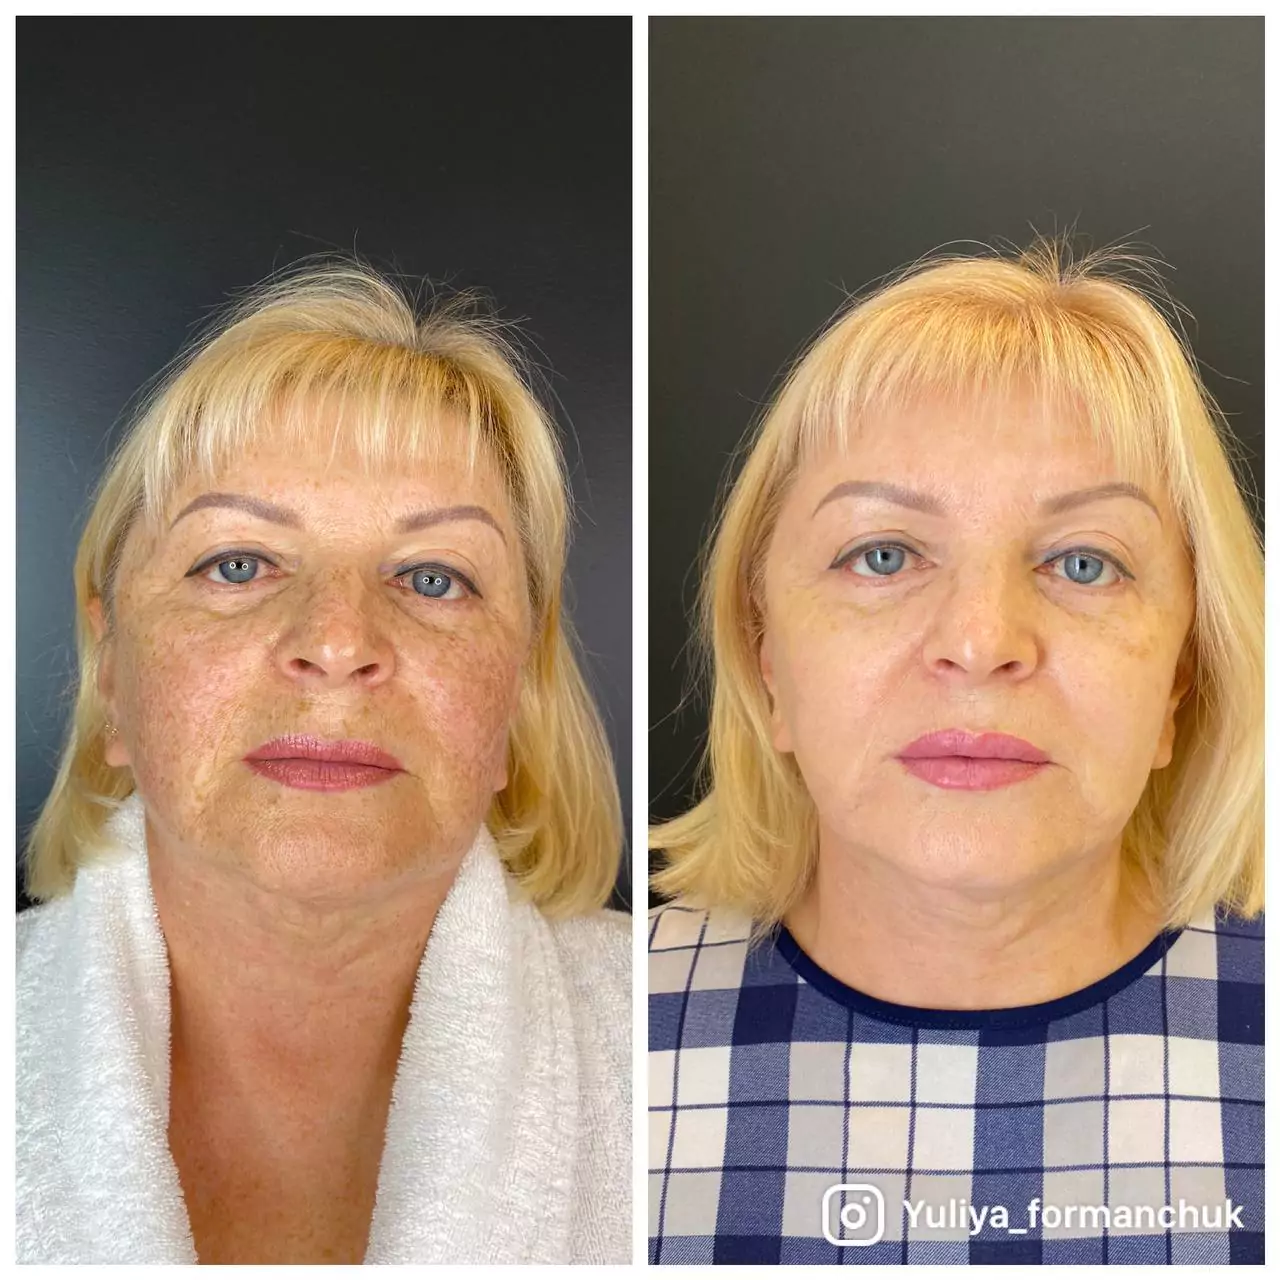 Плазмолифтинг отзывы фото до и после лицо. Плазмолифтинг для лица. Плазмолифтинг лица до и после. Плазмолифтинг для лица до и после фото. Плазмотерапия лица до и после.